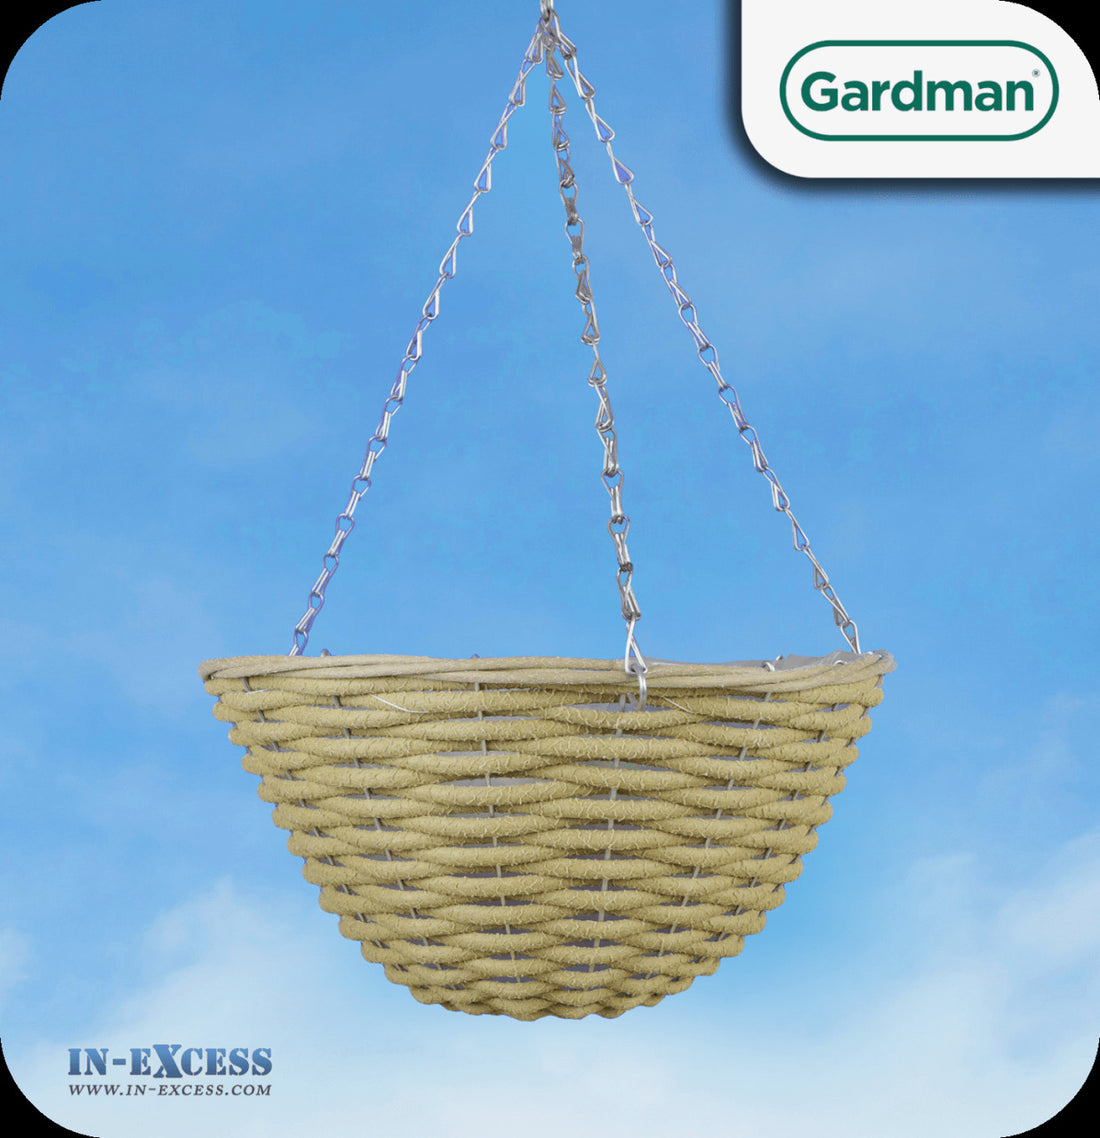 Exquisite Wicker Hanging Baskets